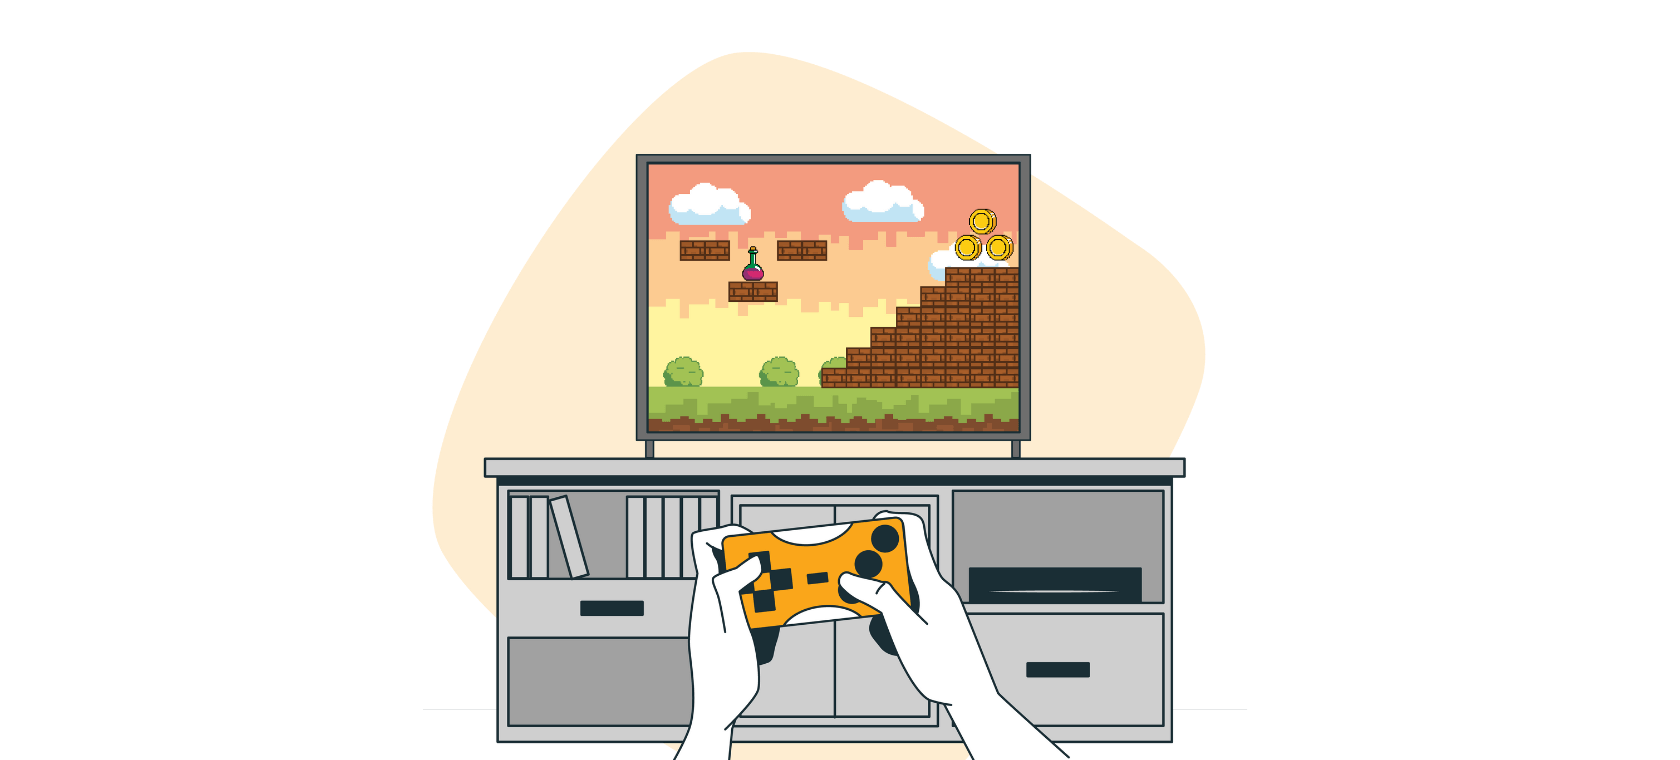 Ilutracija prikazuje narančastu igraću konzolu za video igre.